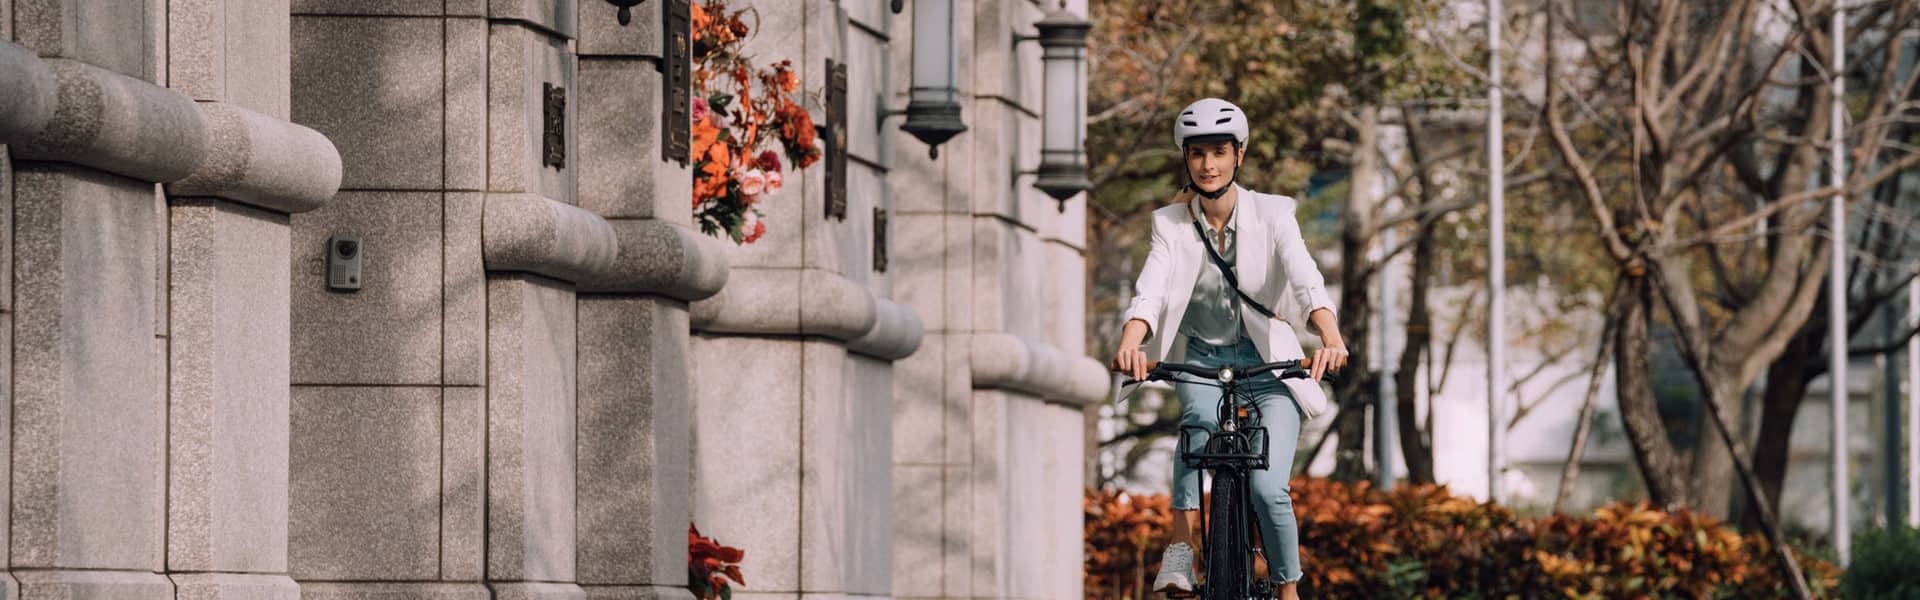 5 причин, по которым езда на электрическом велосипеде полезна для вашего здоровья и окружающей среды